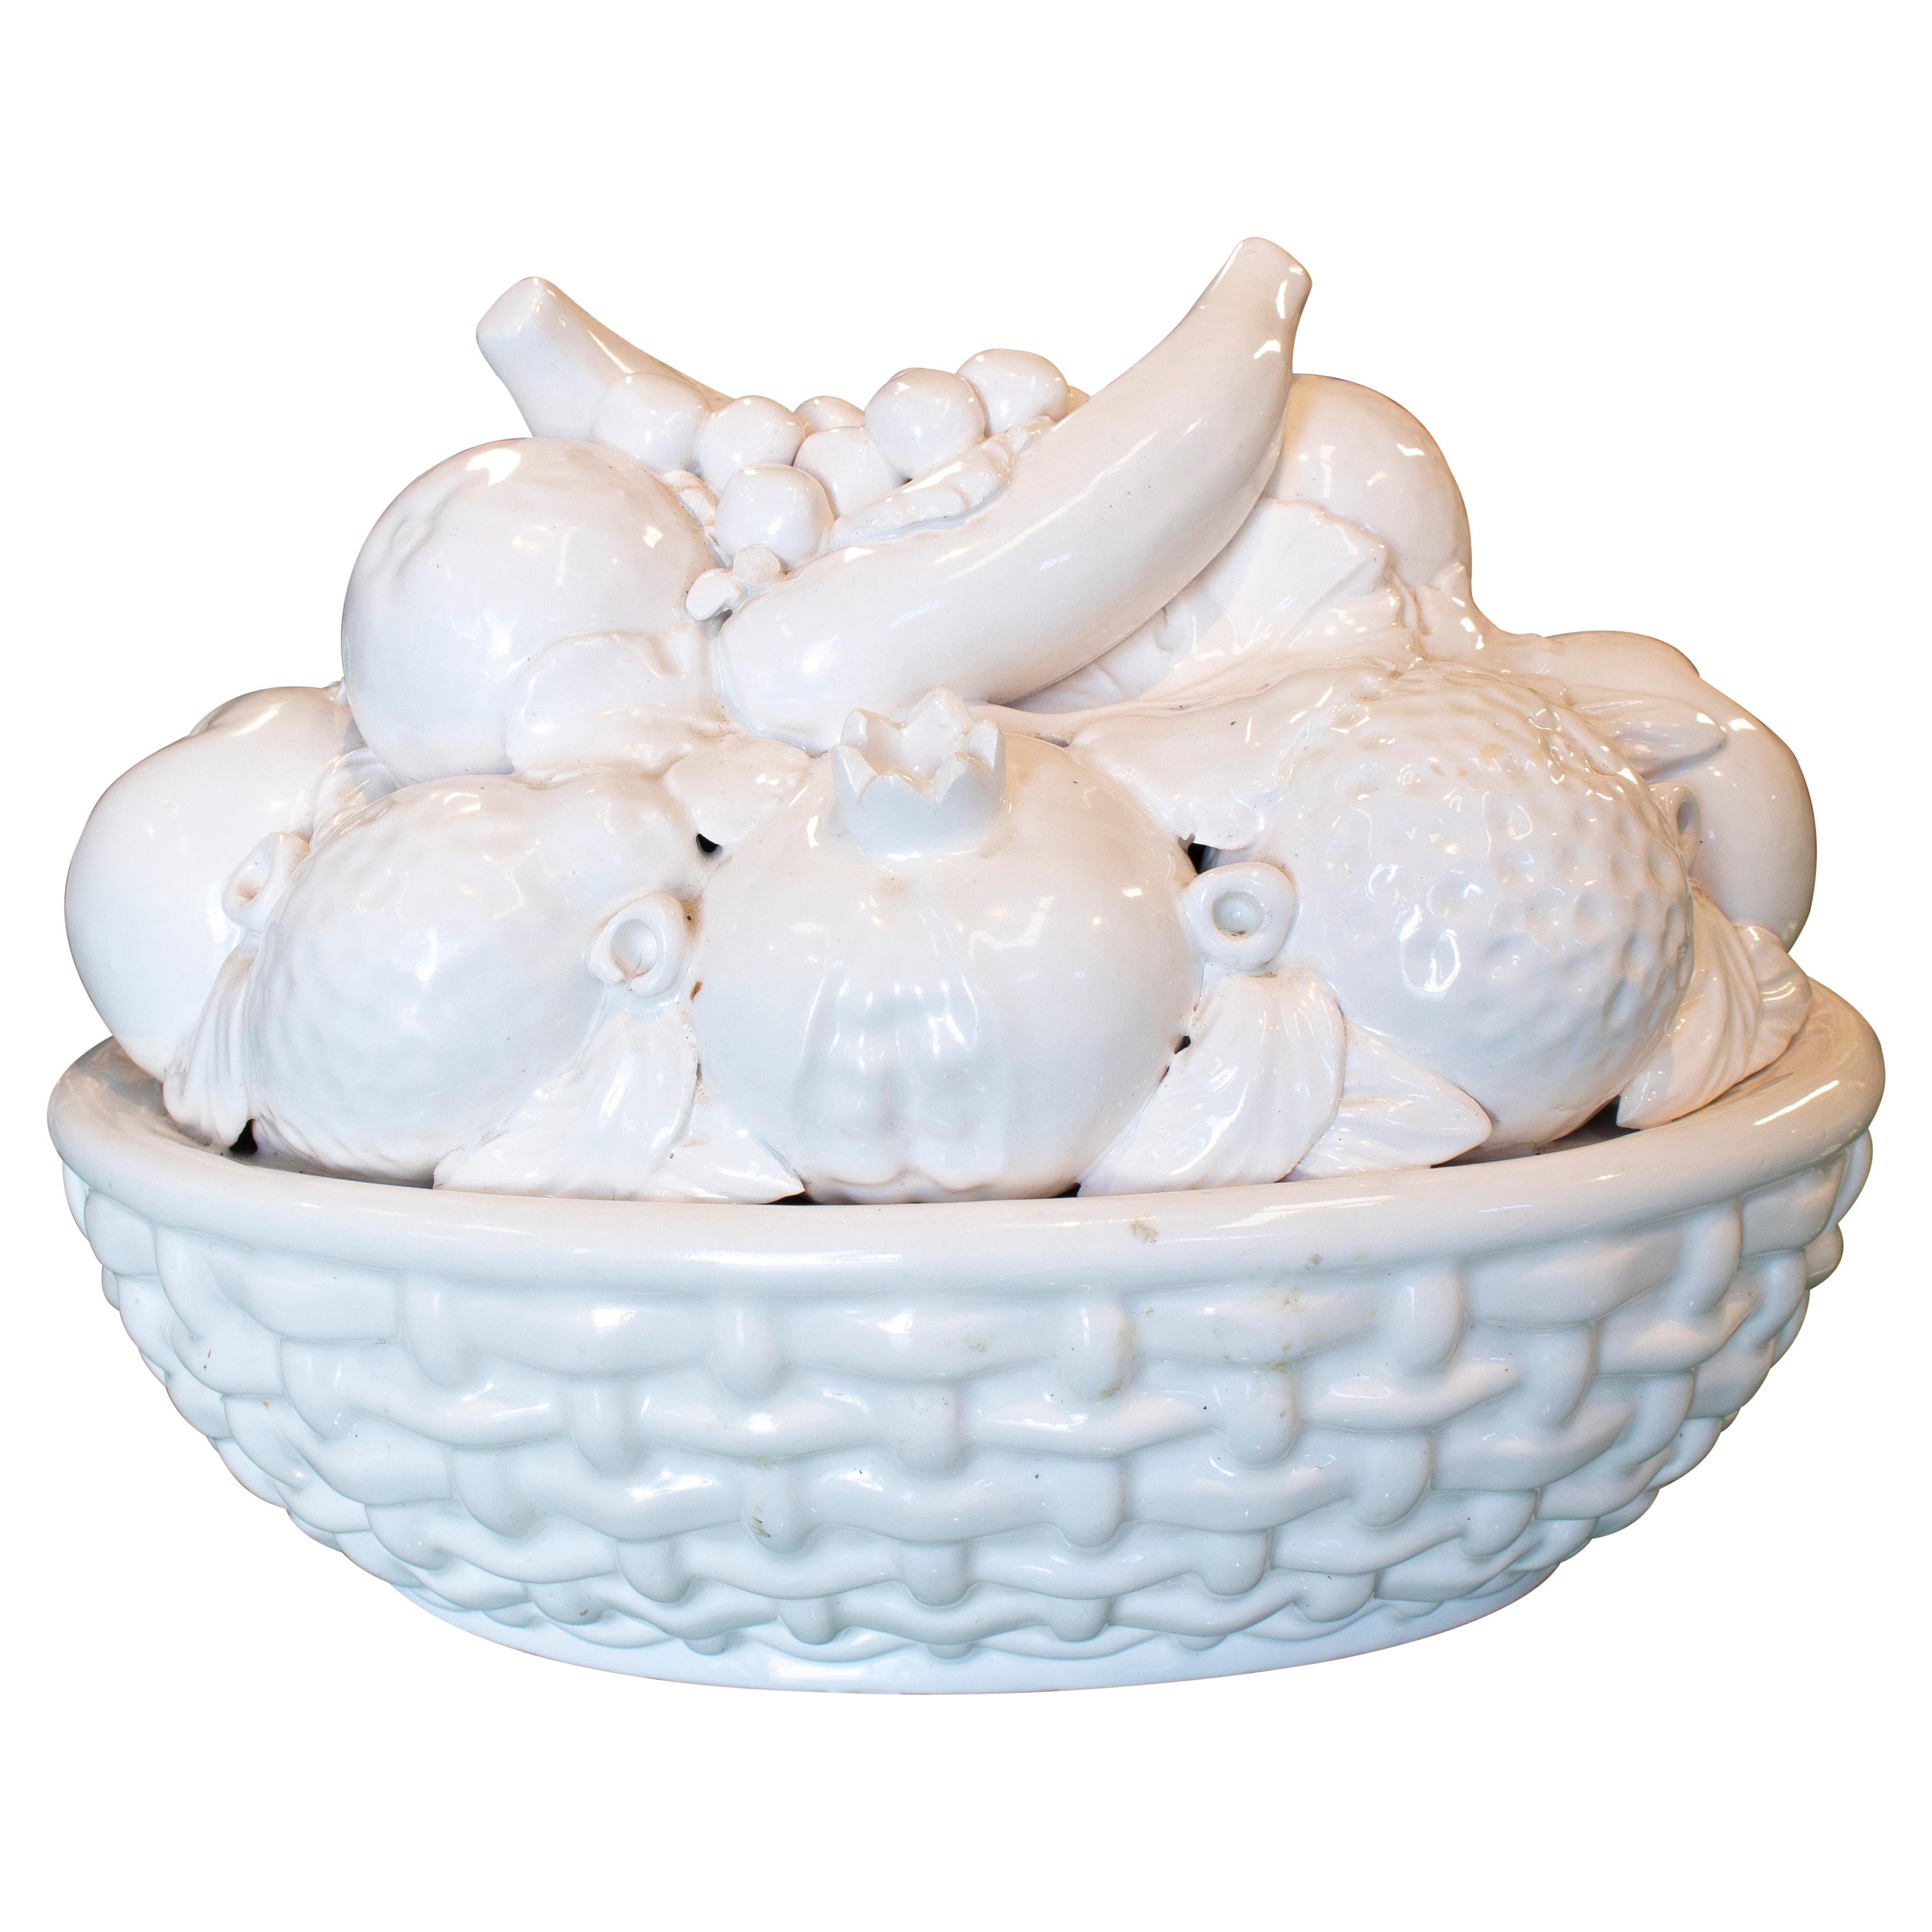 1970s Spanish White Glazed Manises Pottery Fruit Basket Centerpiece